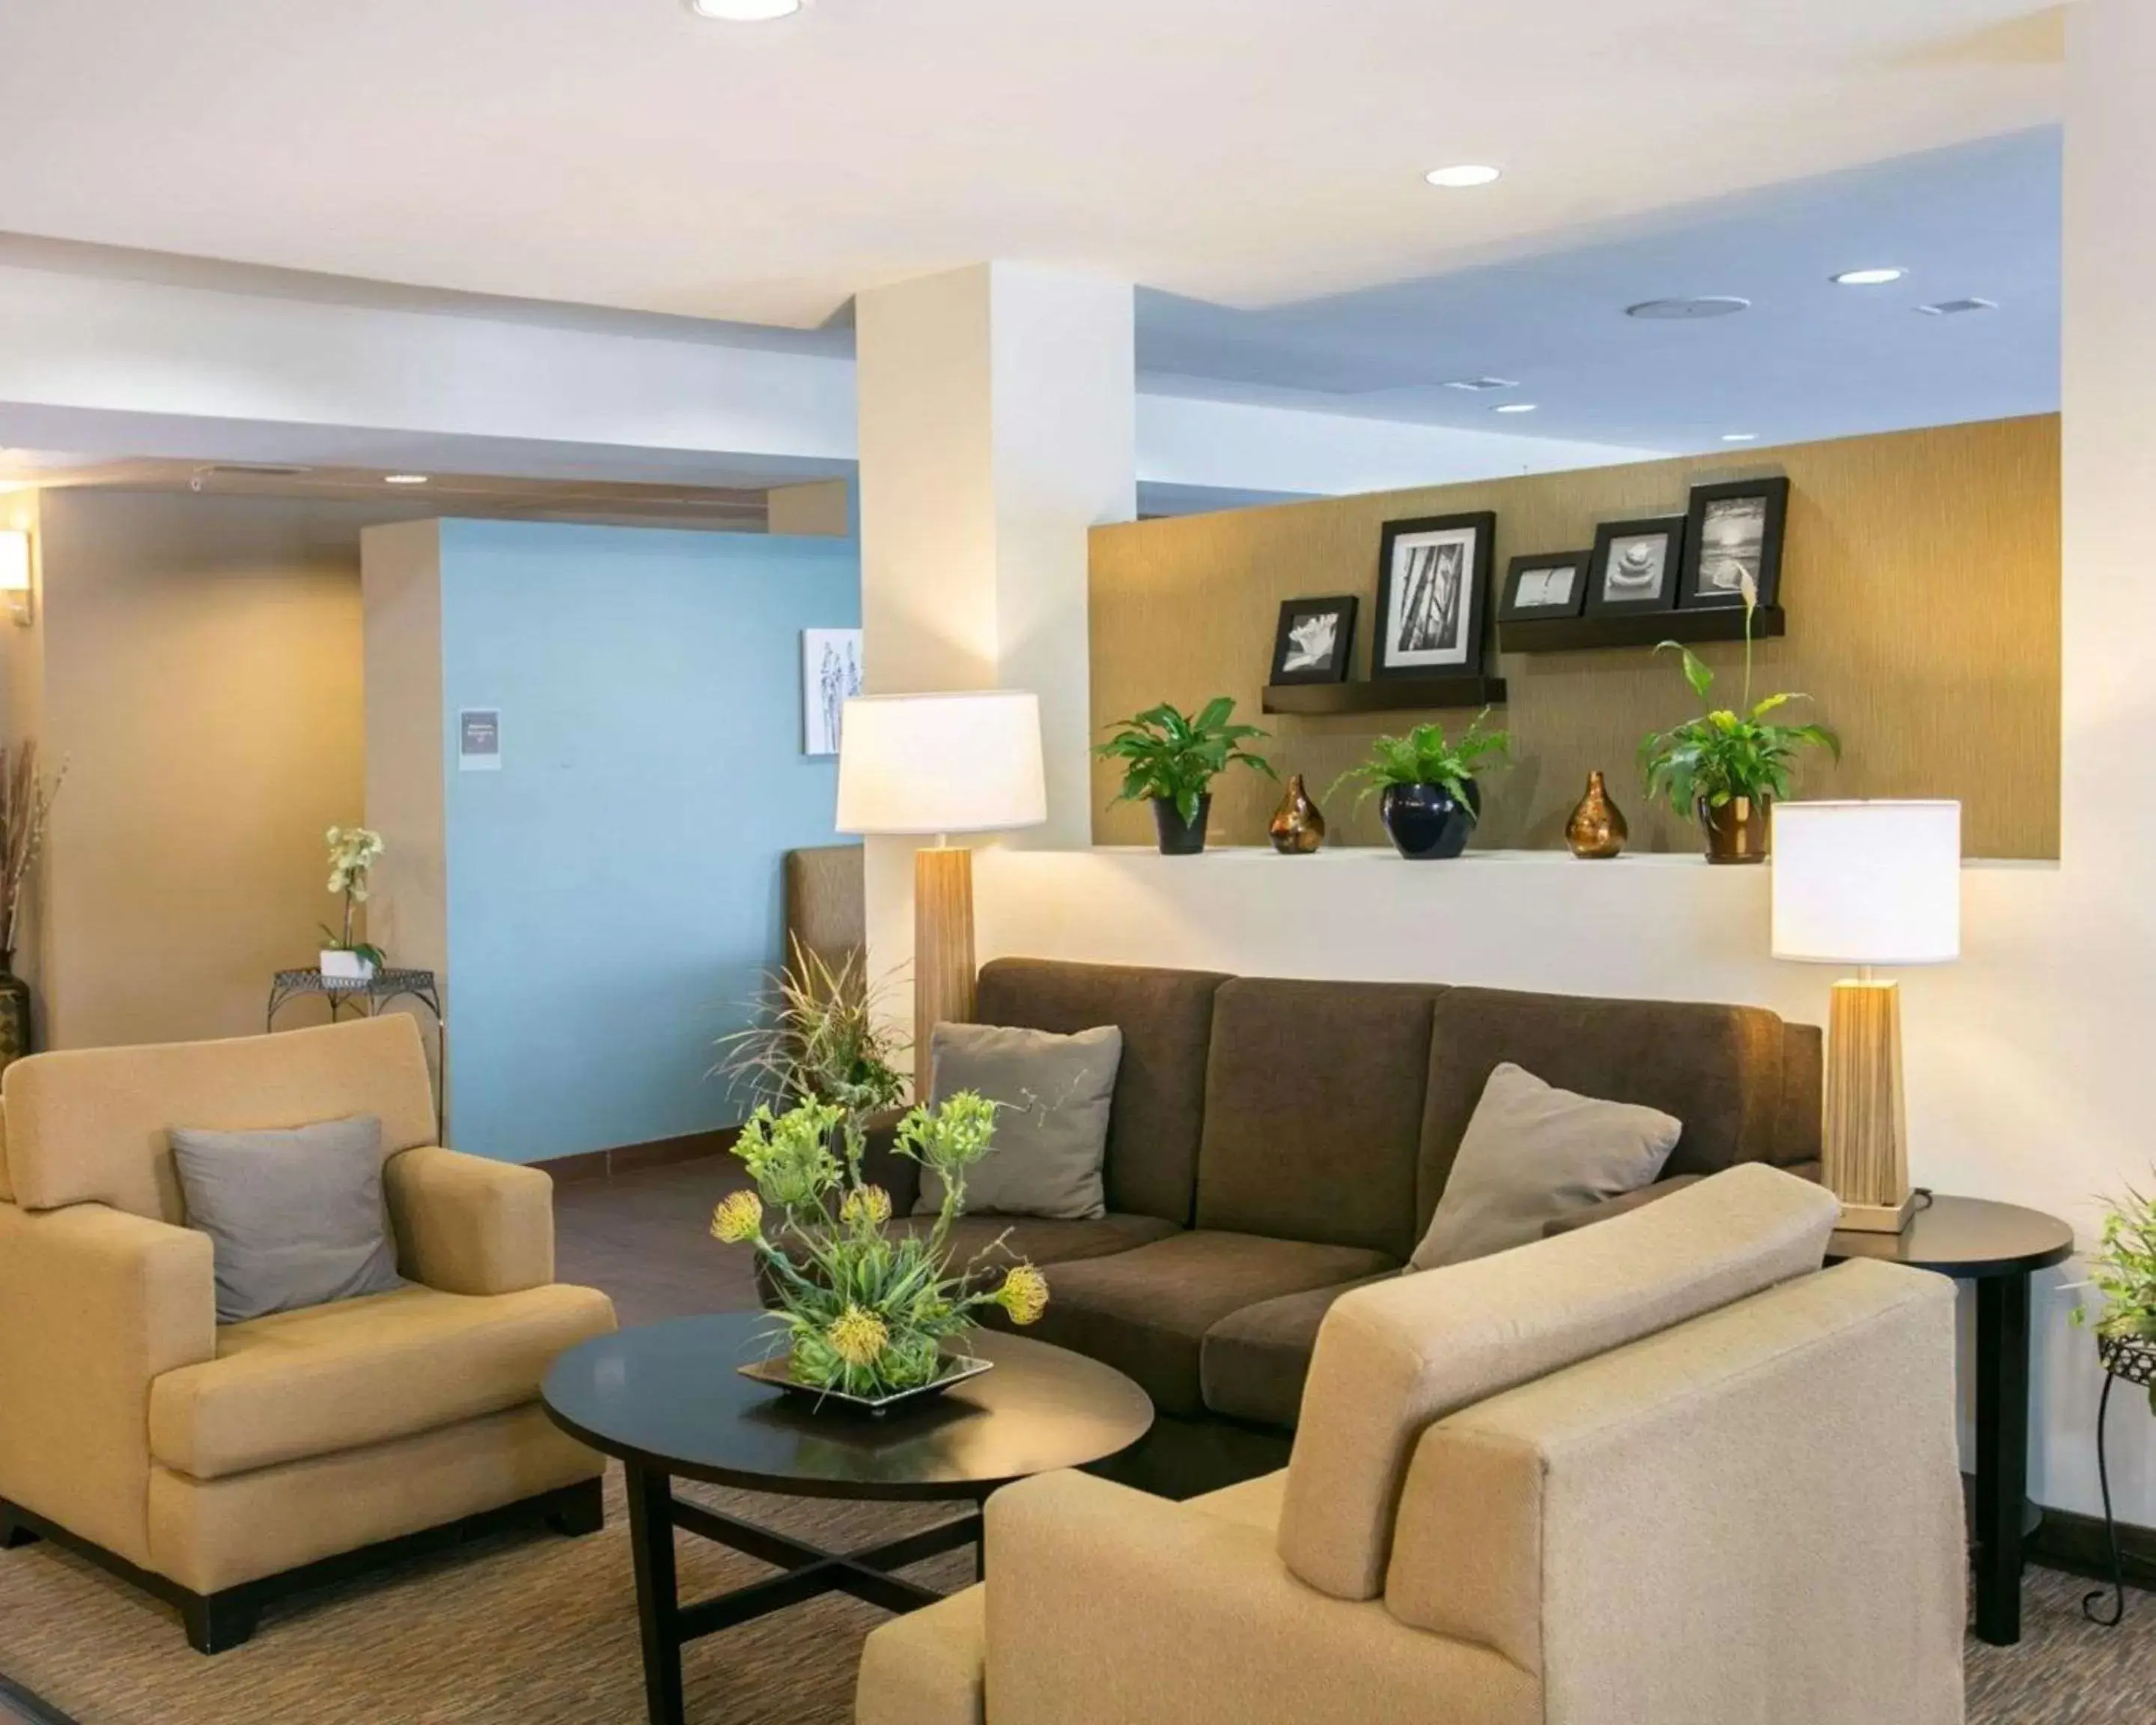 Lobby or reception, Lobby/Reception in Sleep Inn & Suites Austin